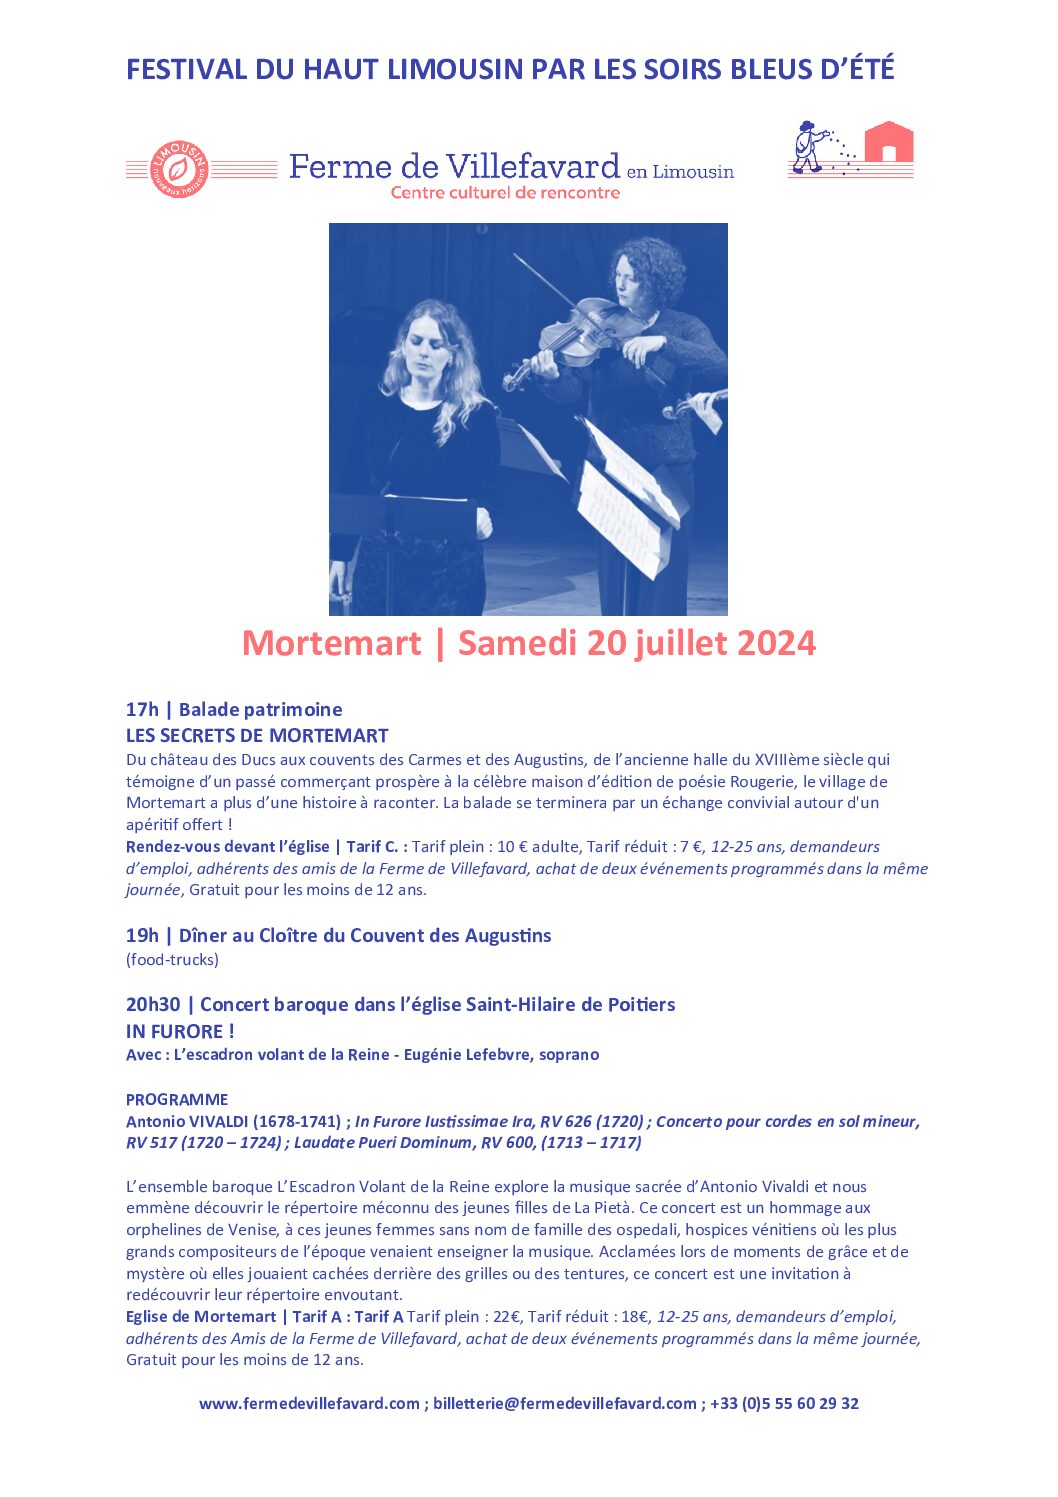 Mortemart accueille le Festival du Haut-Limousin le samedi 20 Juillet